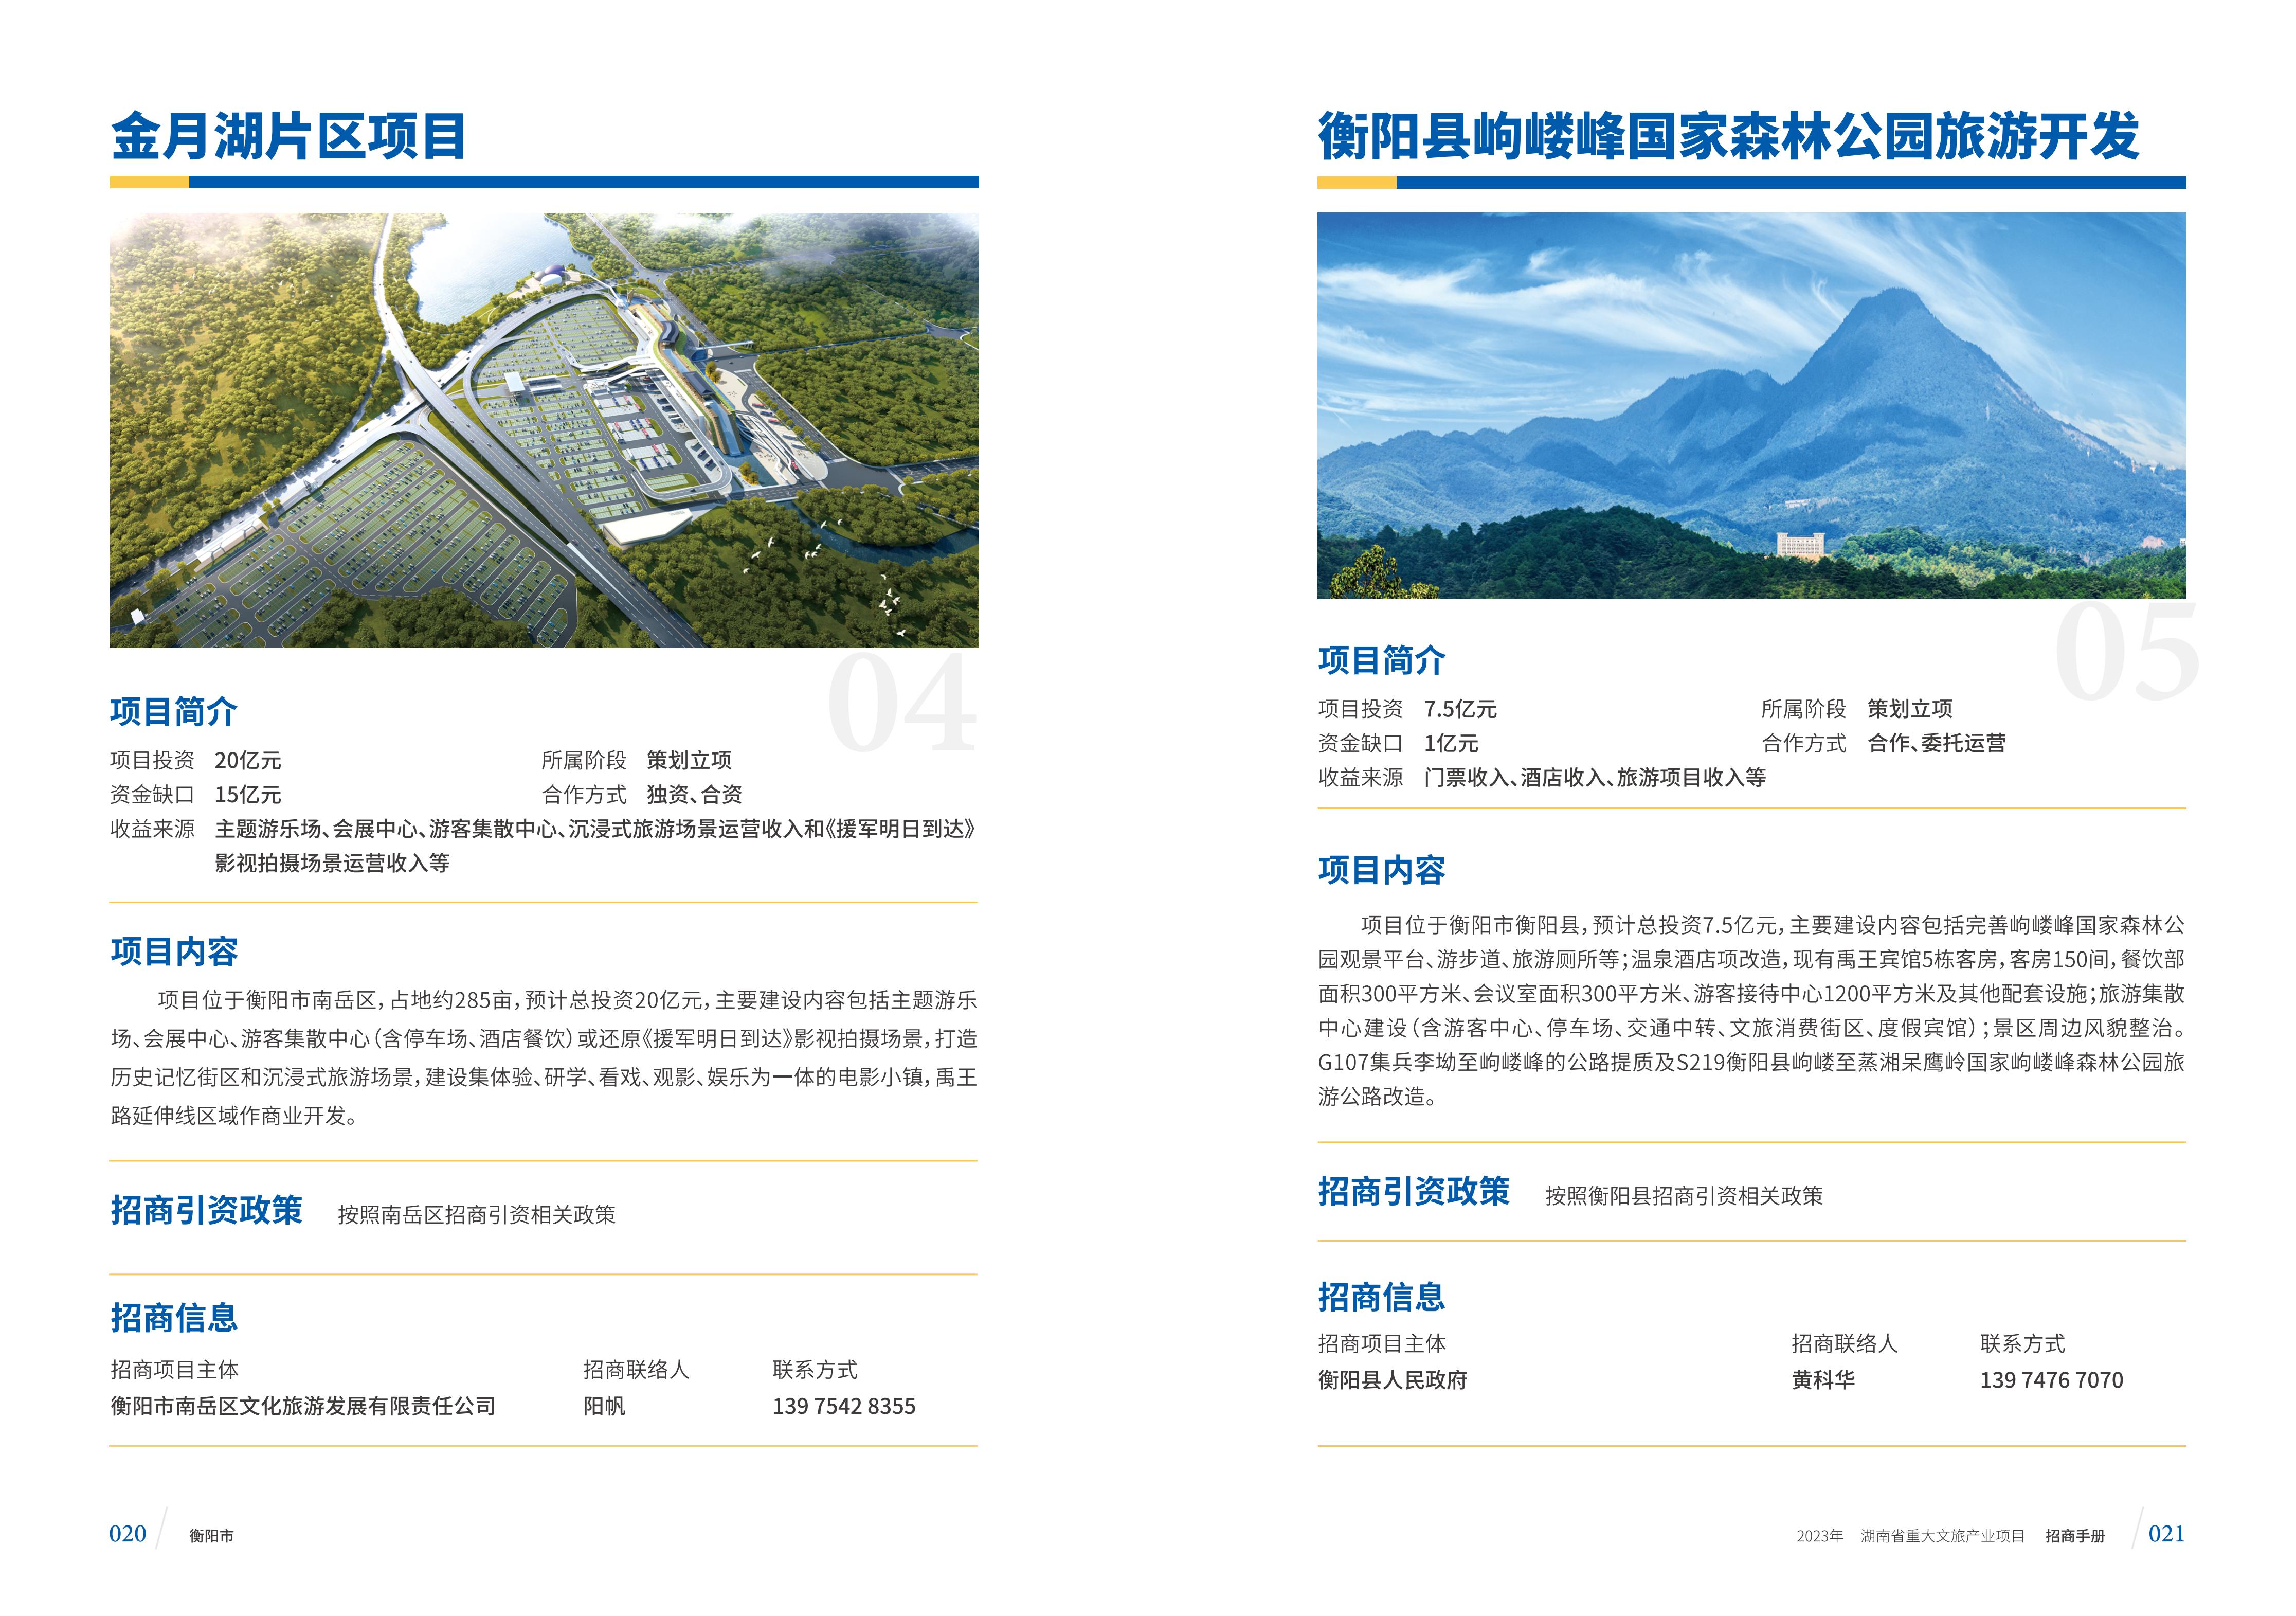 湖南省重大文旅产业项目招手册线上链接版_18.jpg